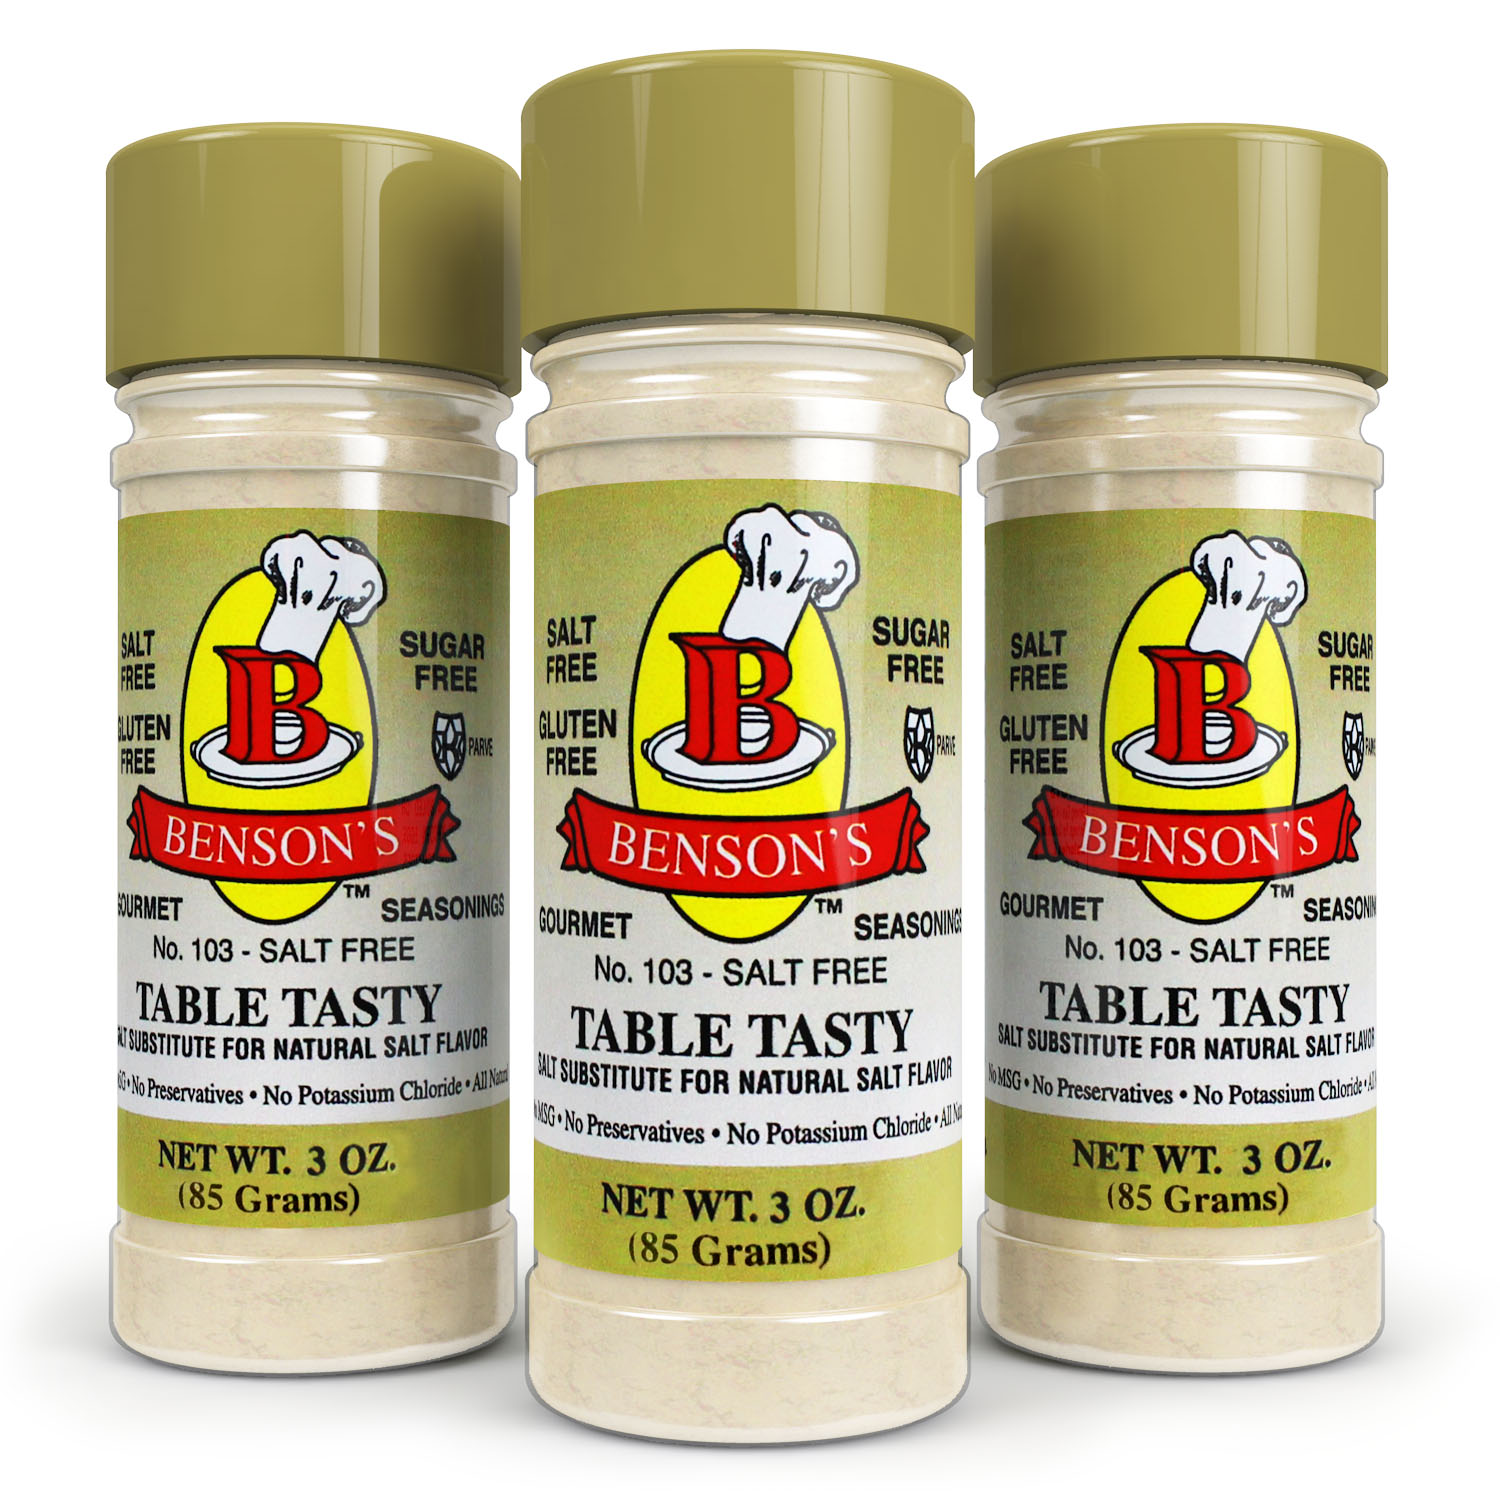 Table Tasty Original Salt Substitute 3 Pack (3 bottles of Table Tasty) -  Benson's Gourmet Seasonings